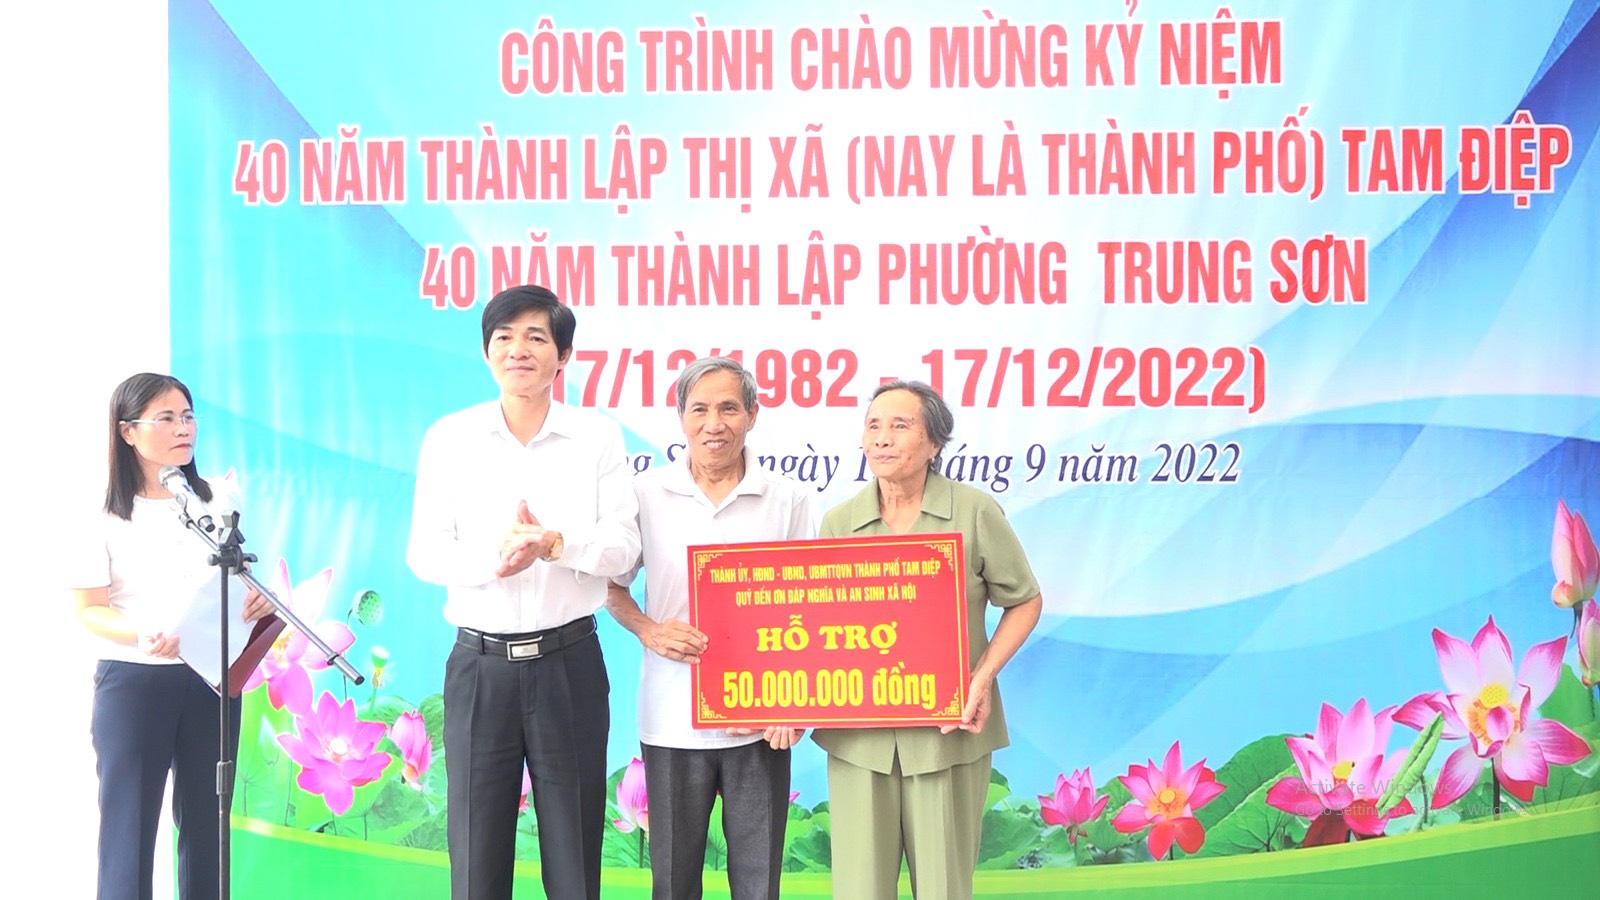 UBND Phường Trung Sơn tổ chức lễ khánh thành và bàn giao nhà ở cho hộ gia đình bà Nguyễn Thị Thợi